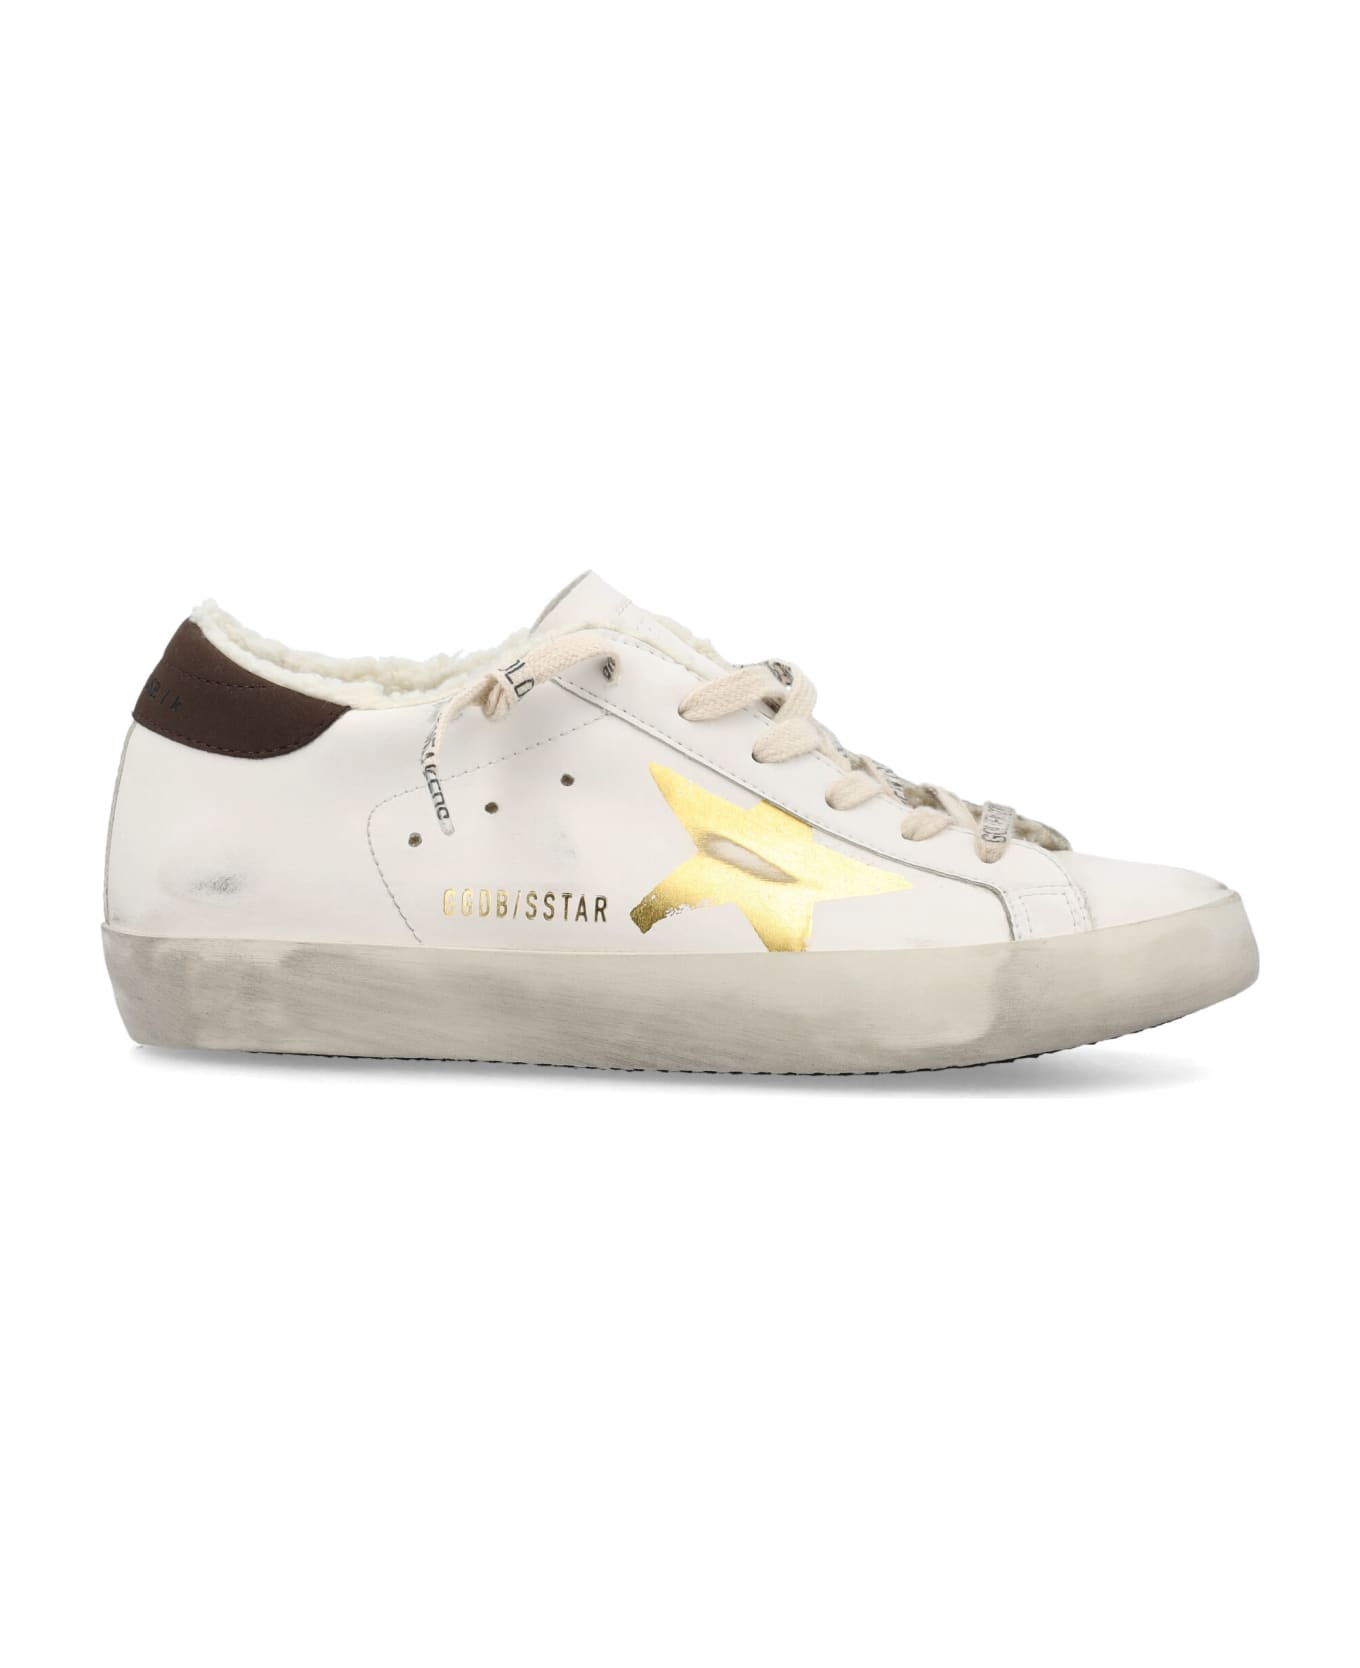 Golden Goose Super Star Sneakers - White/Gold スニーカー